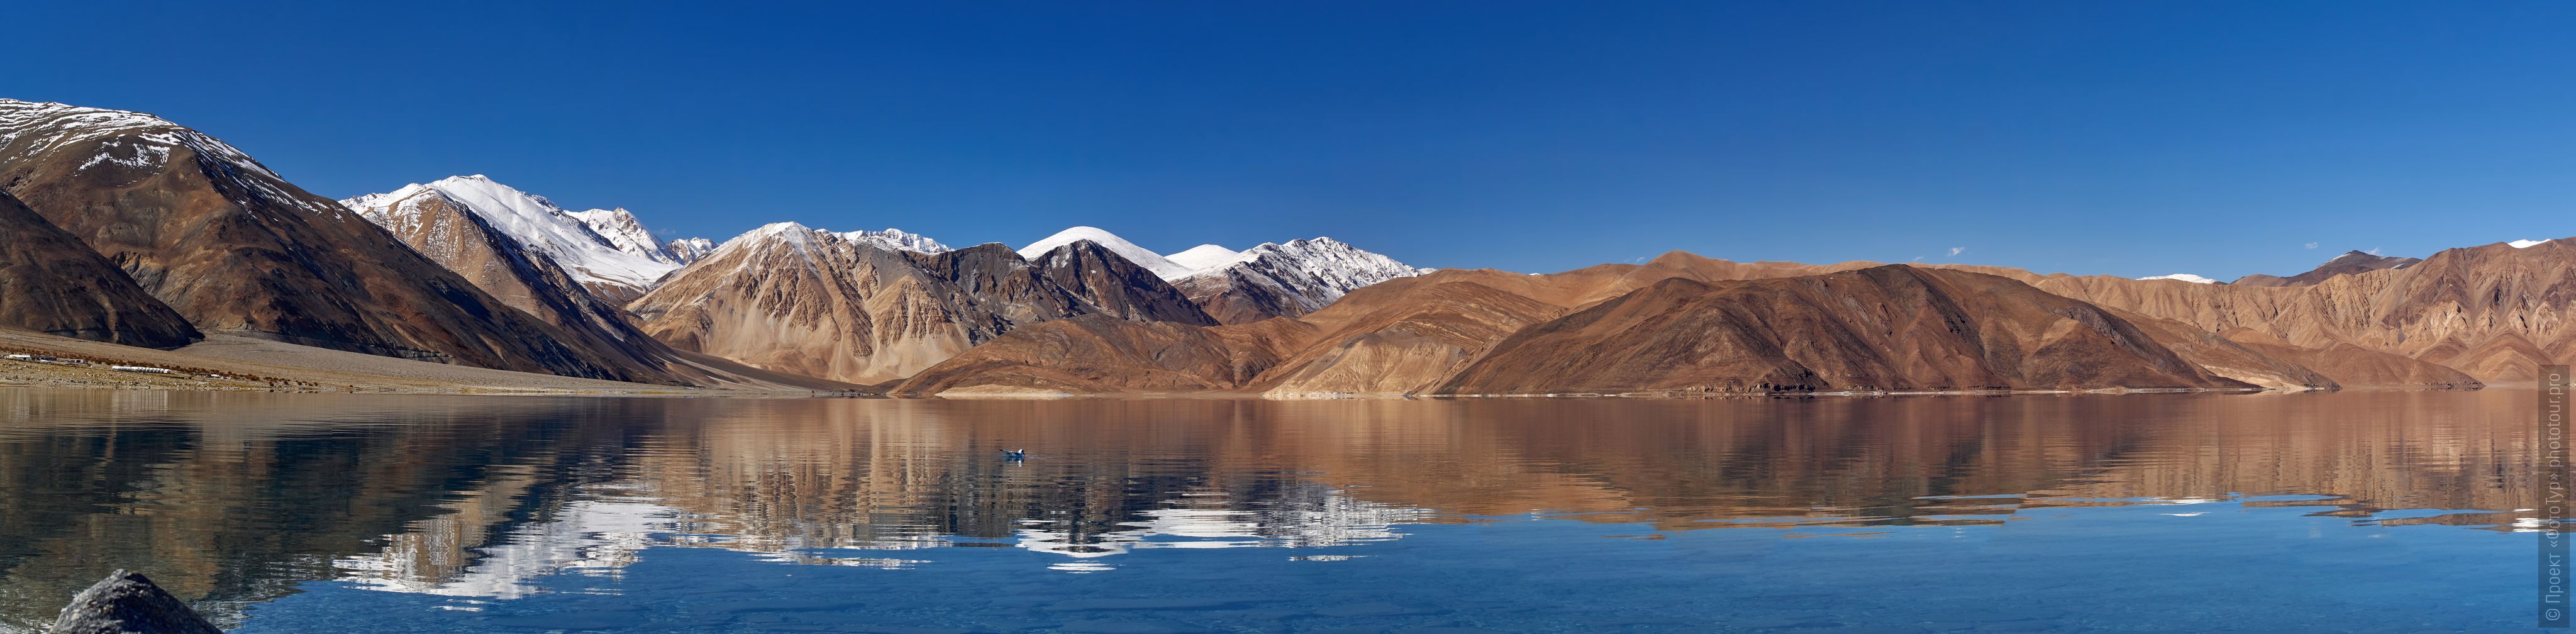 Pangong Tso Lake, Ladakh. Advertiser Tibet Lakes: Alpine lakes, geyser valley, Lamayuru, September 01 - 10.09. 2023 year.